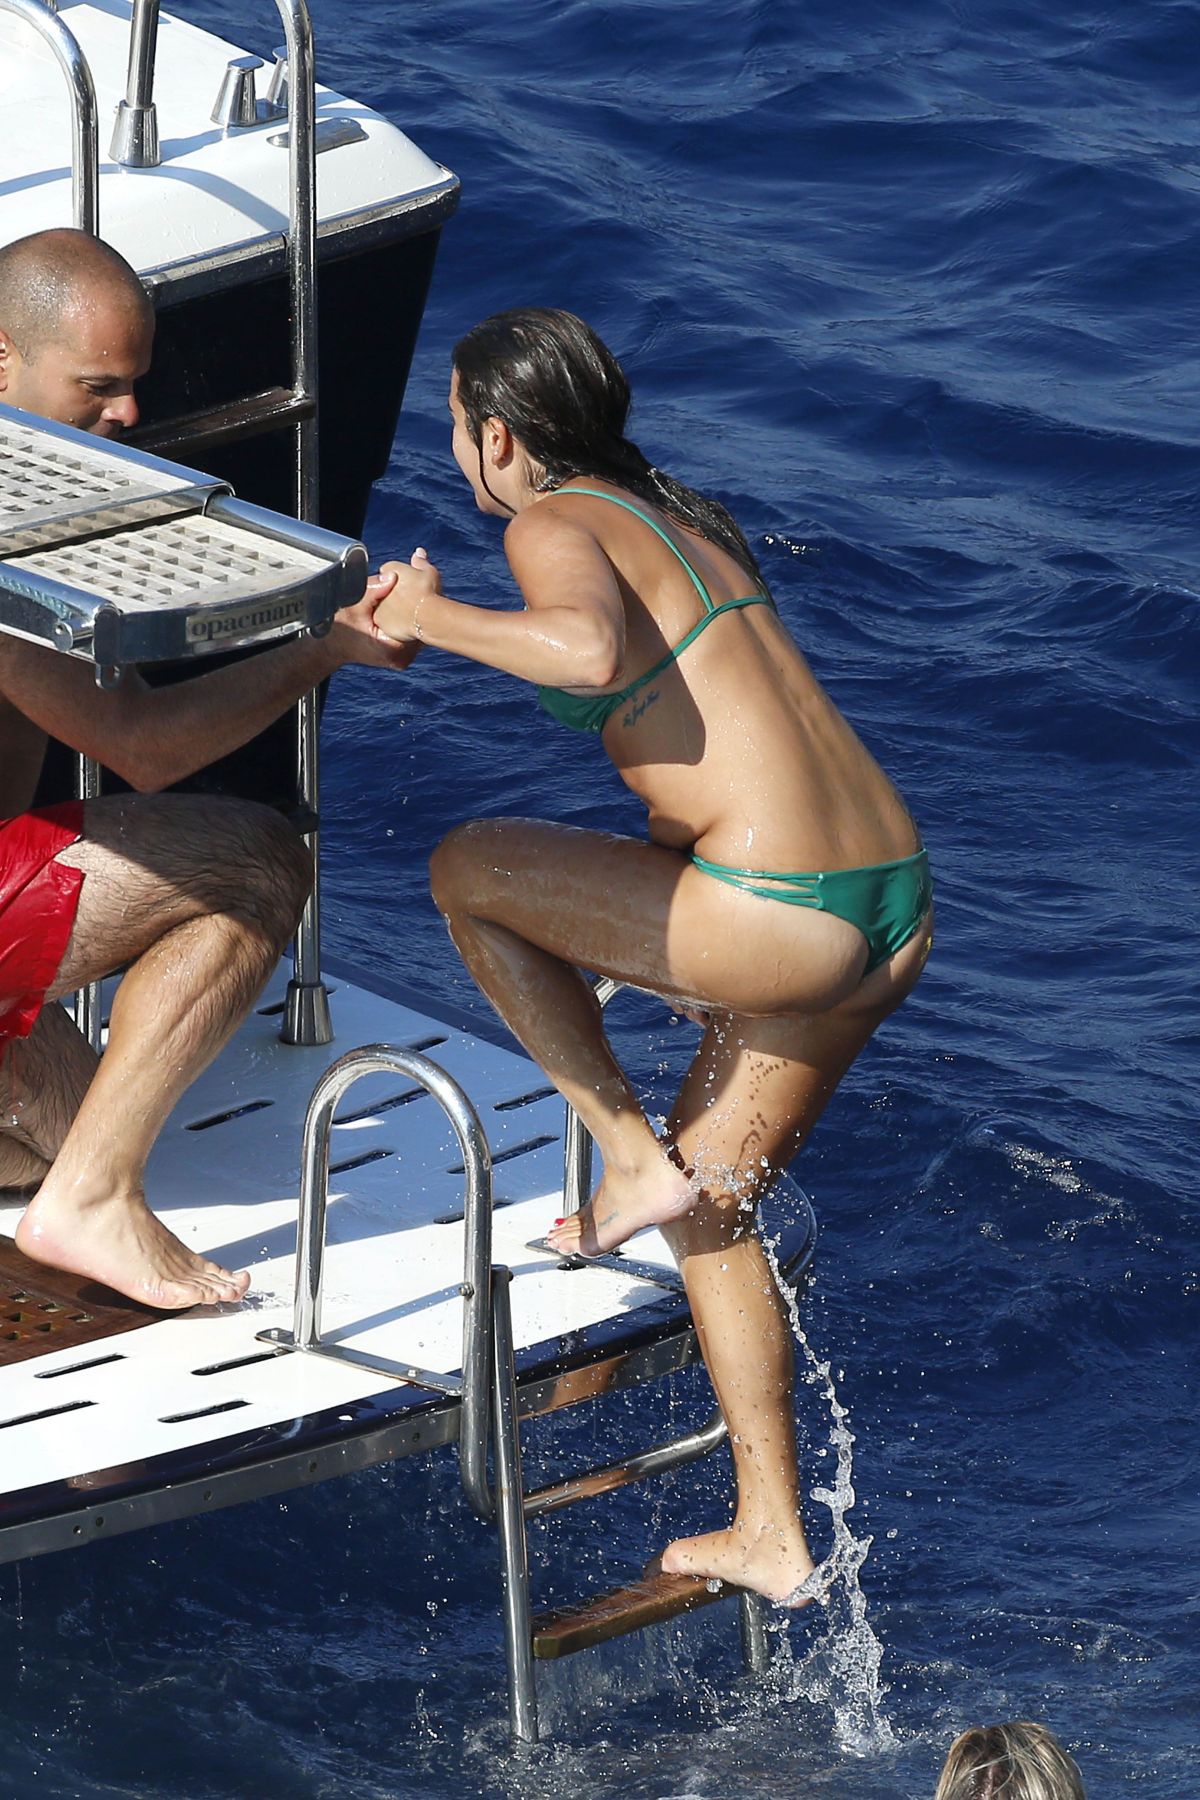 LEA MICHELE in Bikini on a Boat in Italy.